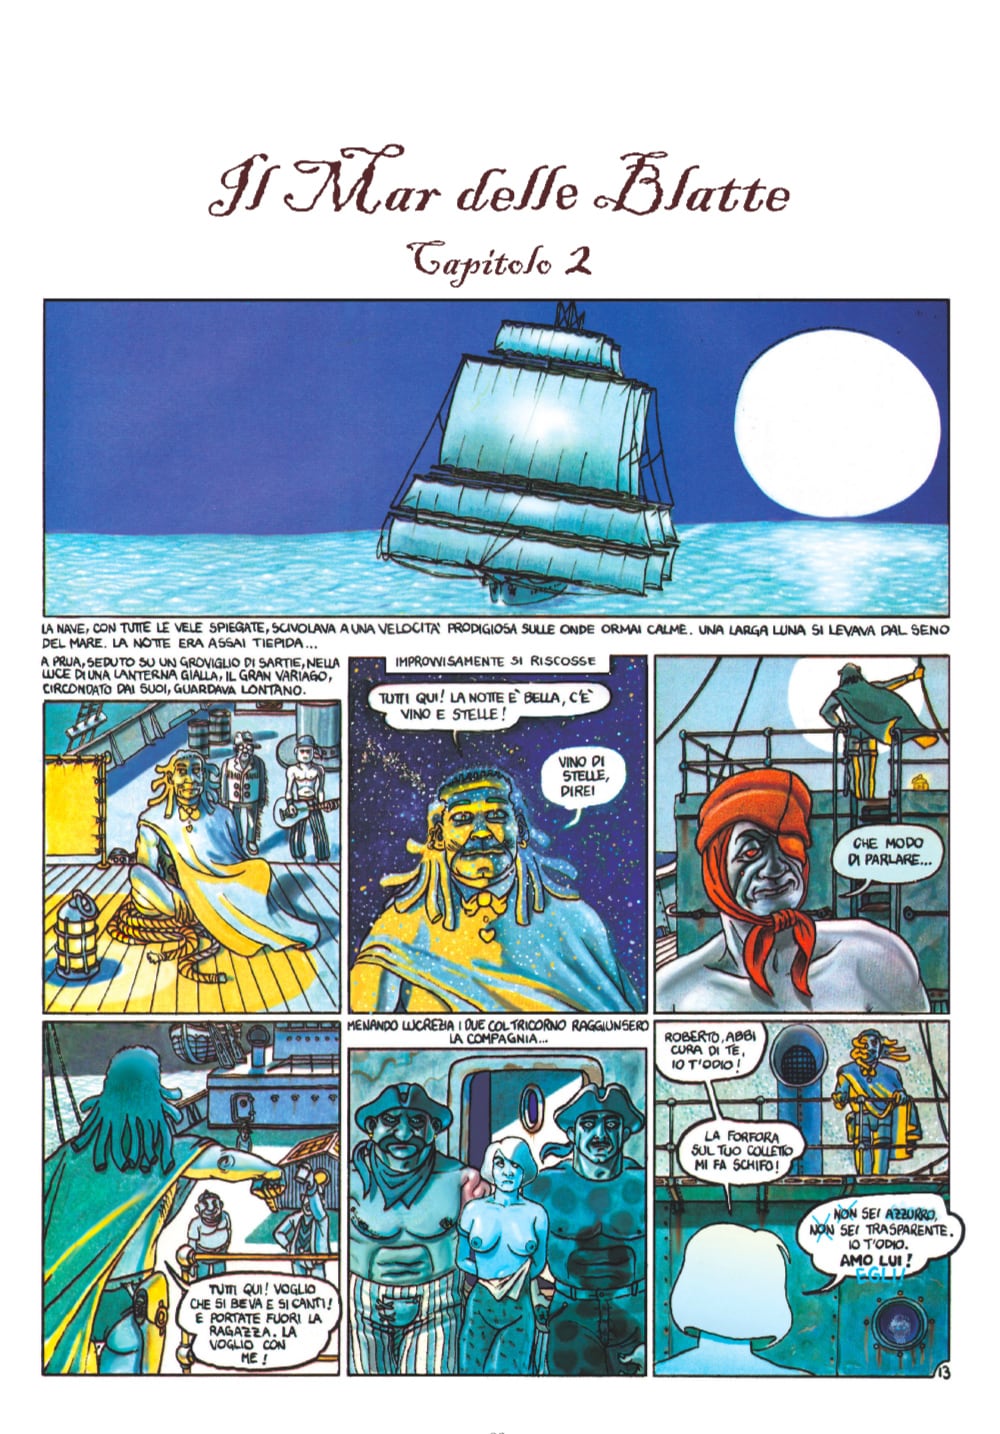 "Il mar delle blatte" di Tommaso Landolfi e Filippo Scòzzari (Coconino Press)